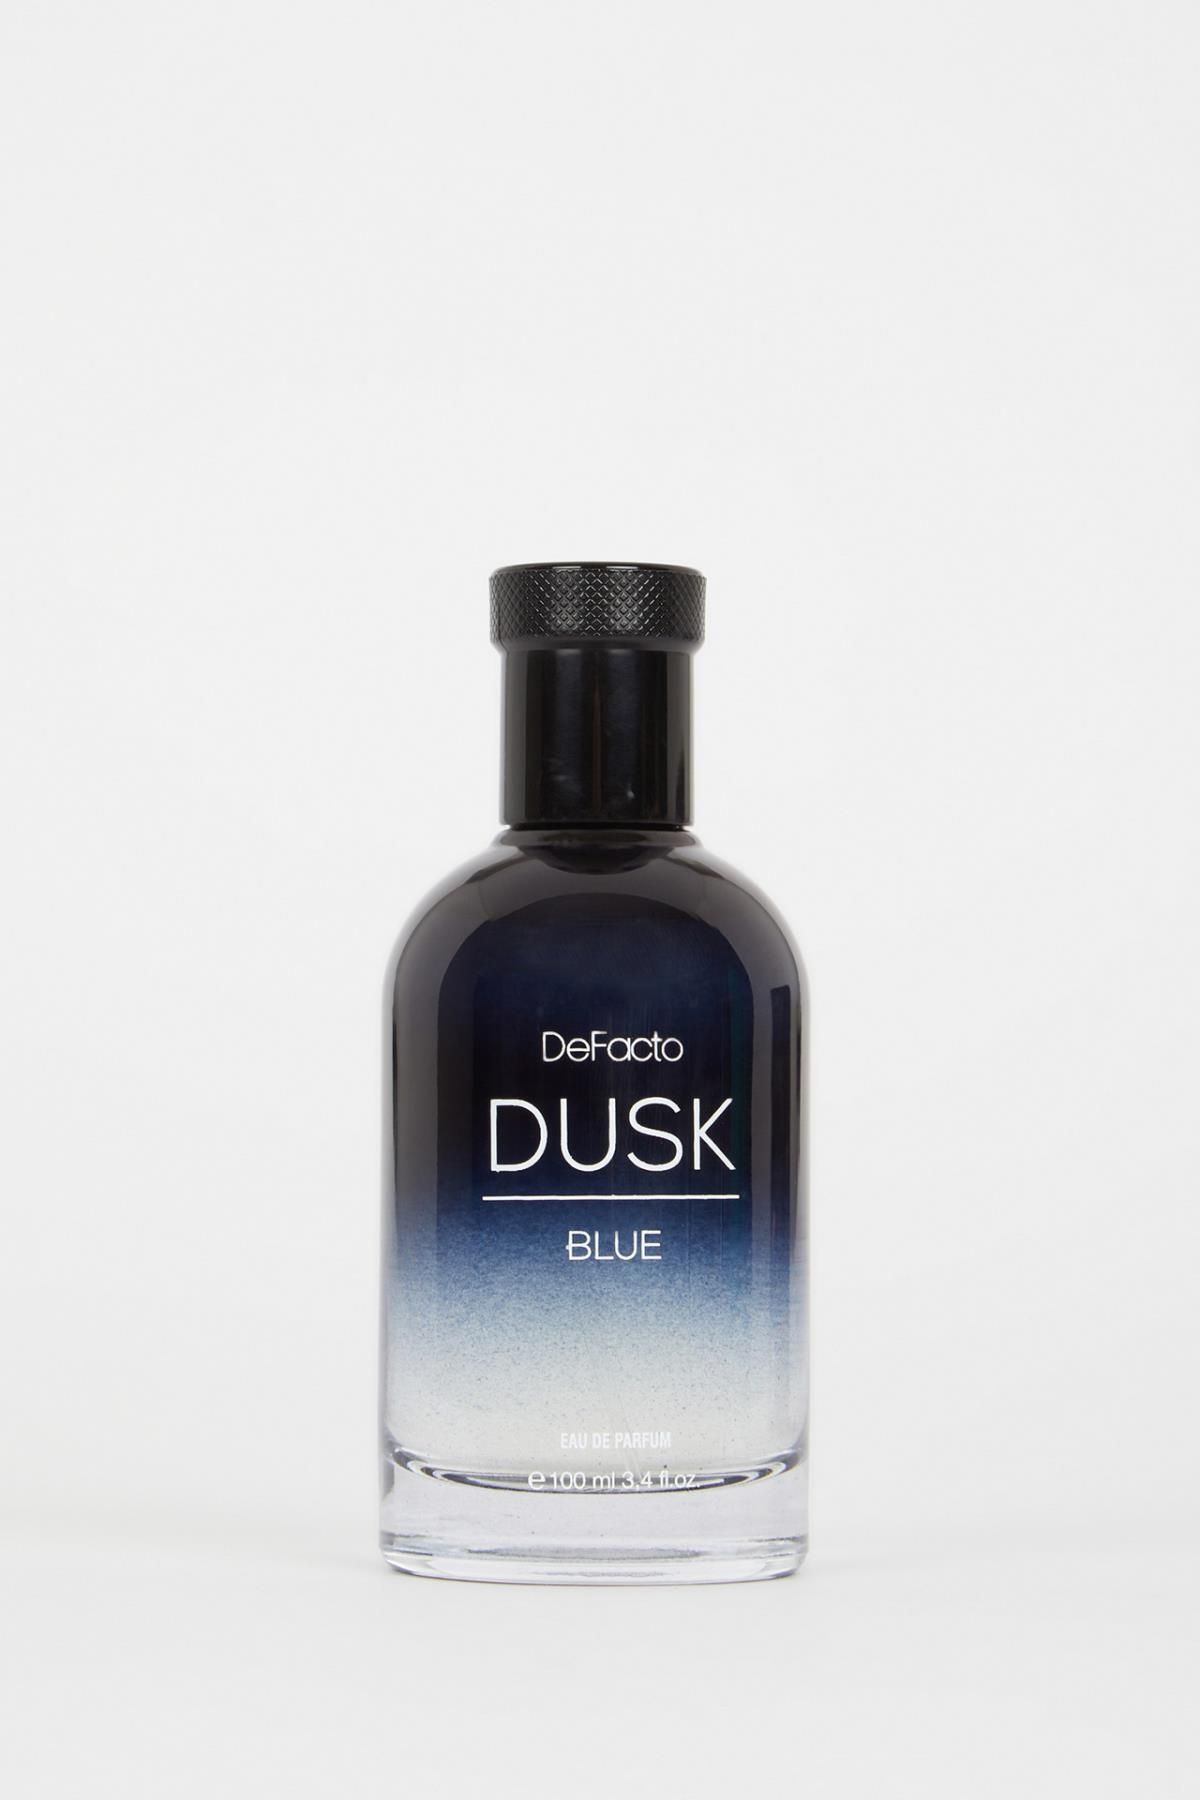 عطر مردانه بلو داسک 100 میل دیفکتو دفکتو Blue Dusk Defacto